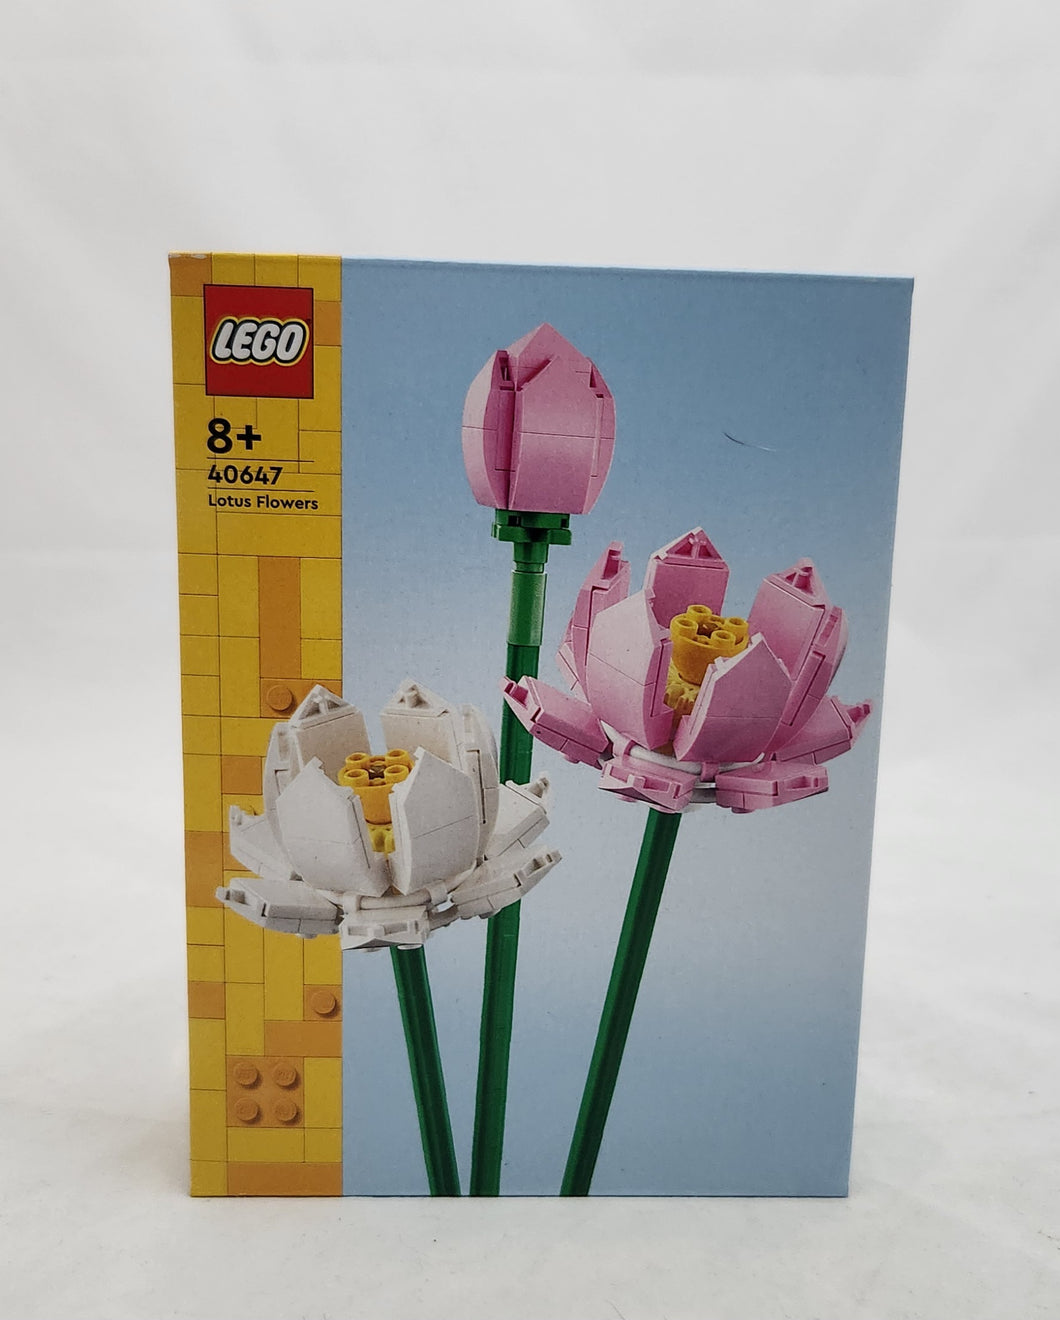 LEGO 40647